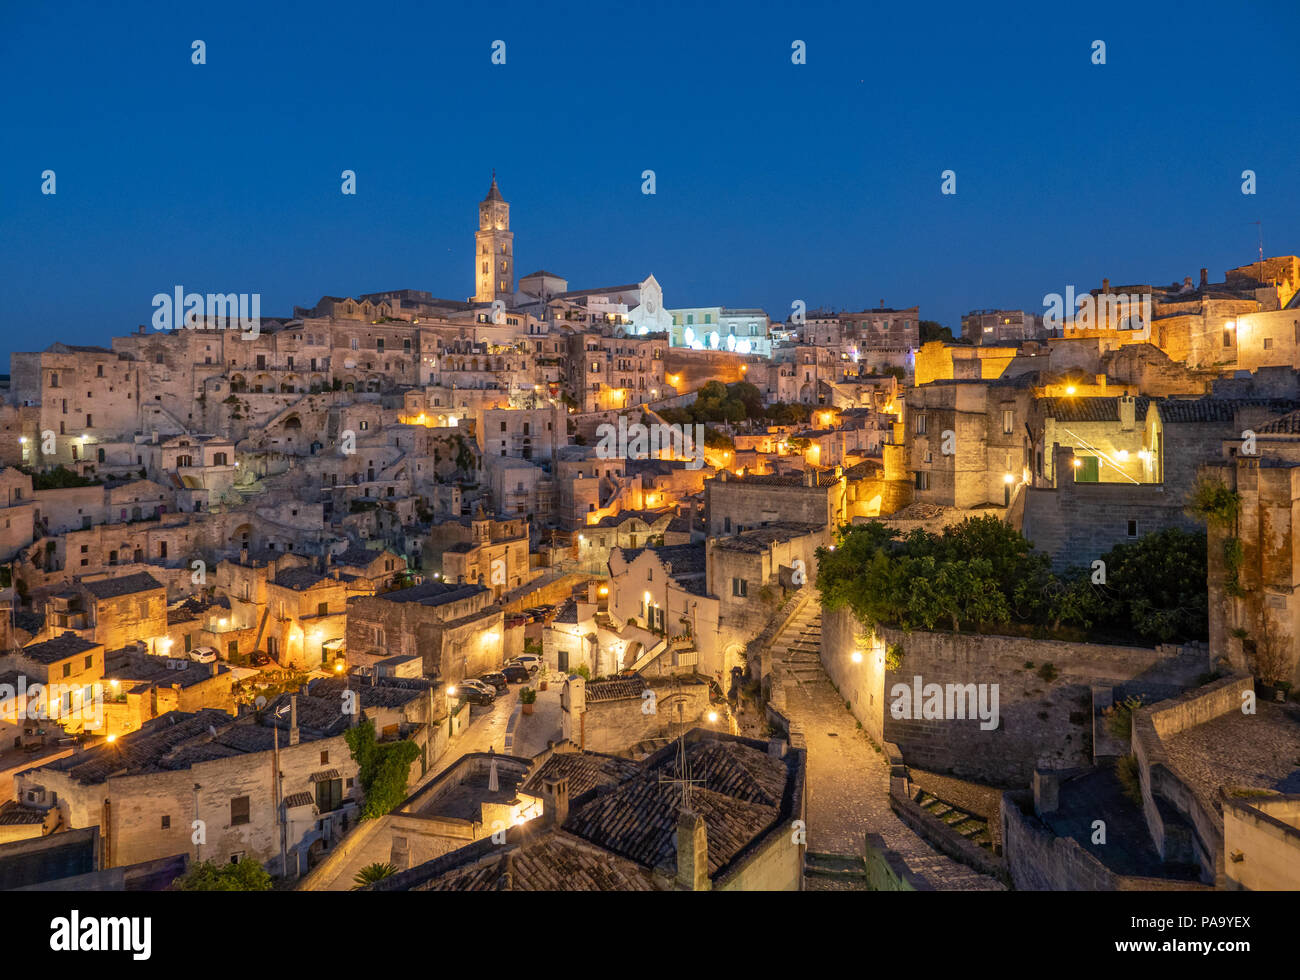 Maratea (Basilikata) - Das historische Zentrum der wunderschönen Stein Stadt im südlichen Italien, eine touristische Attraktion für die berühmte assi' Altstadt. Stockfoto